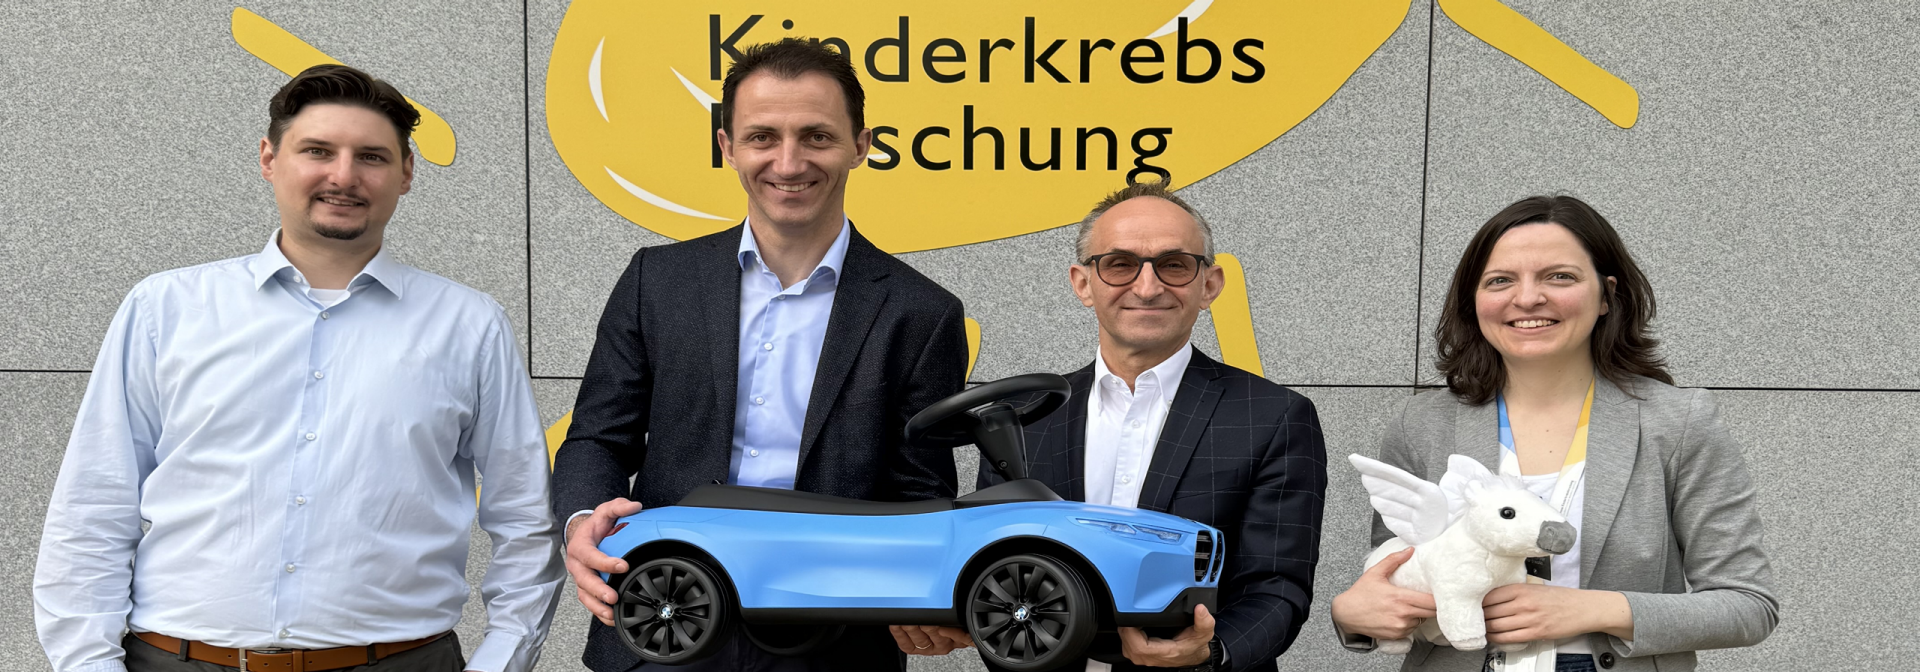 BMW Group Werk Steyr und St. Anna Kinderkrebsforschung setzen Kooperation 2024 fort